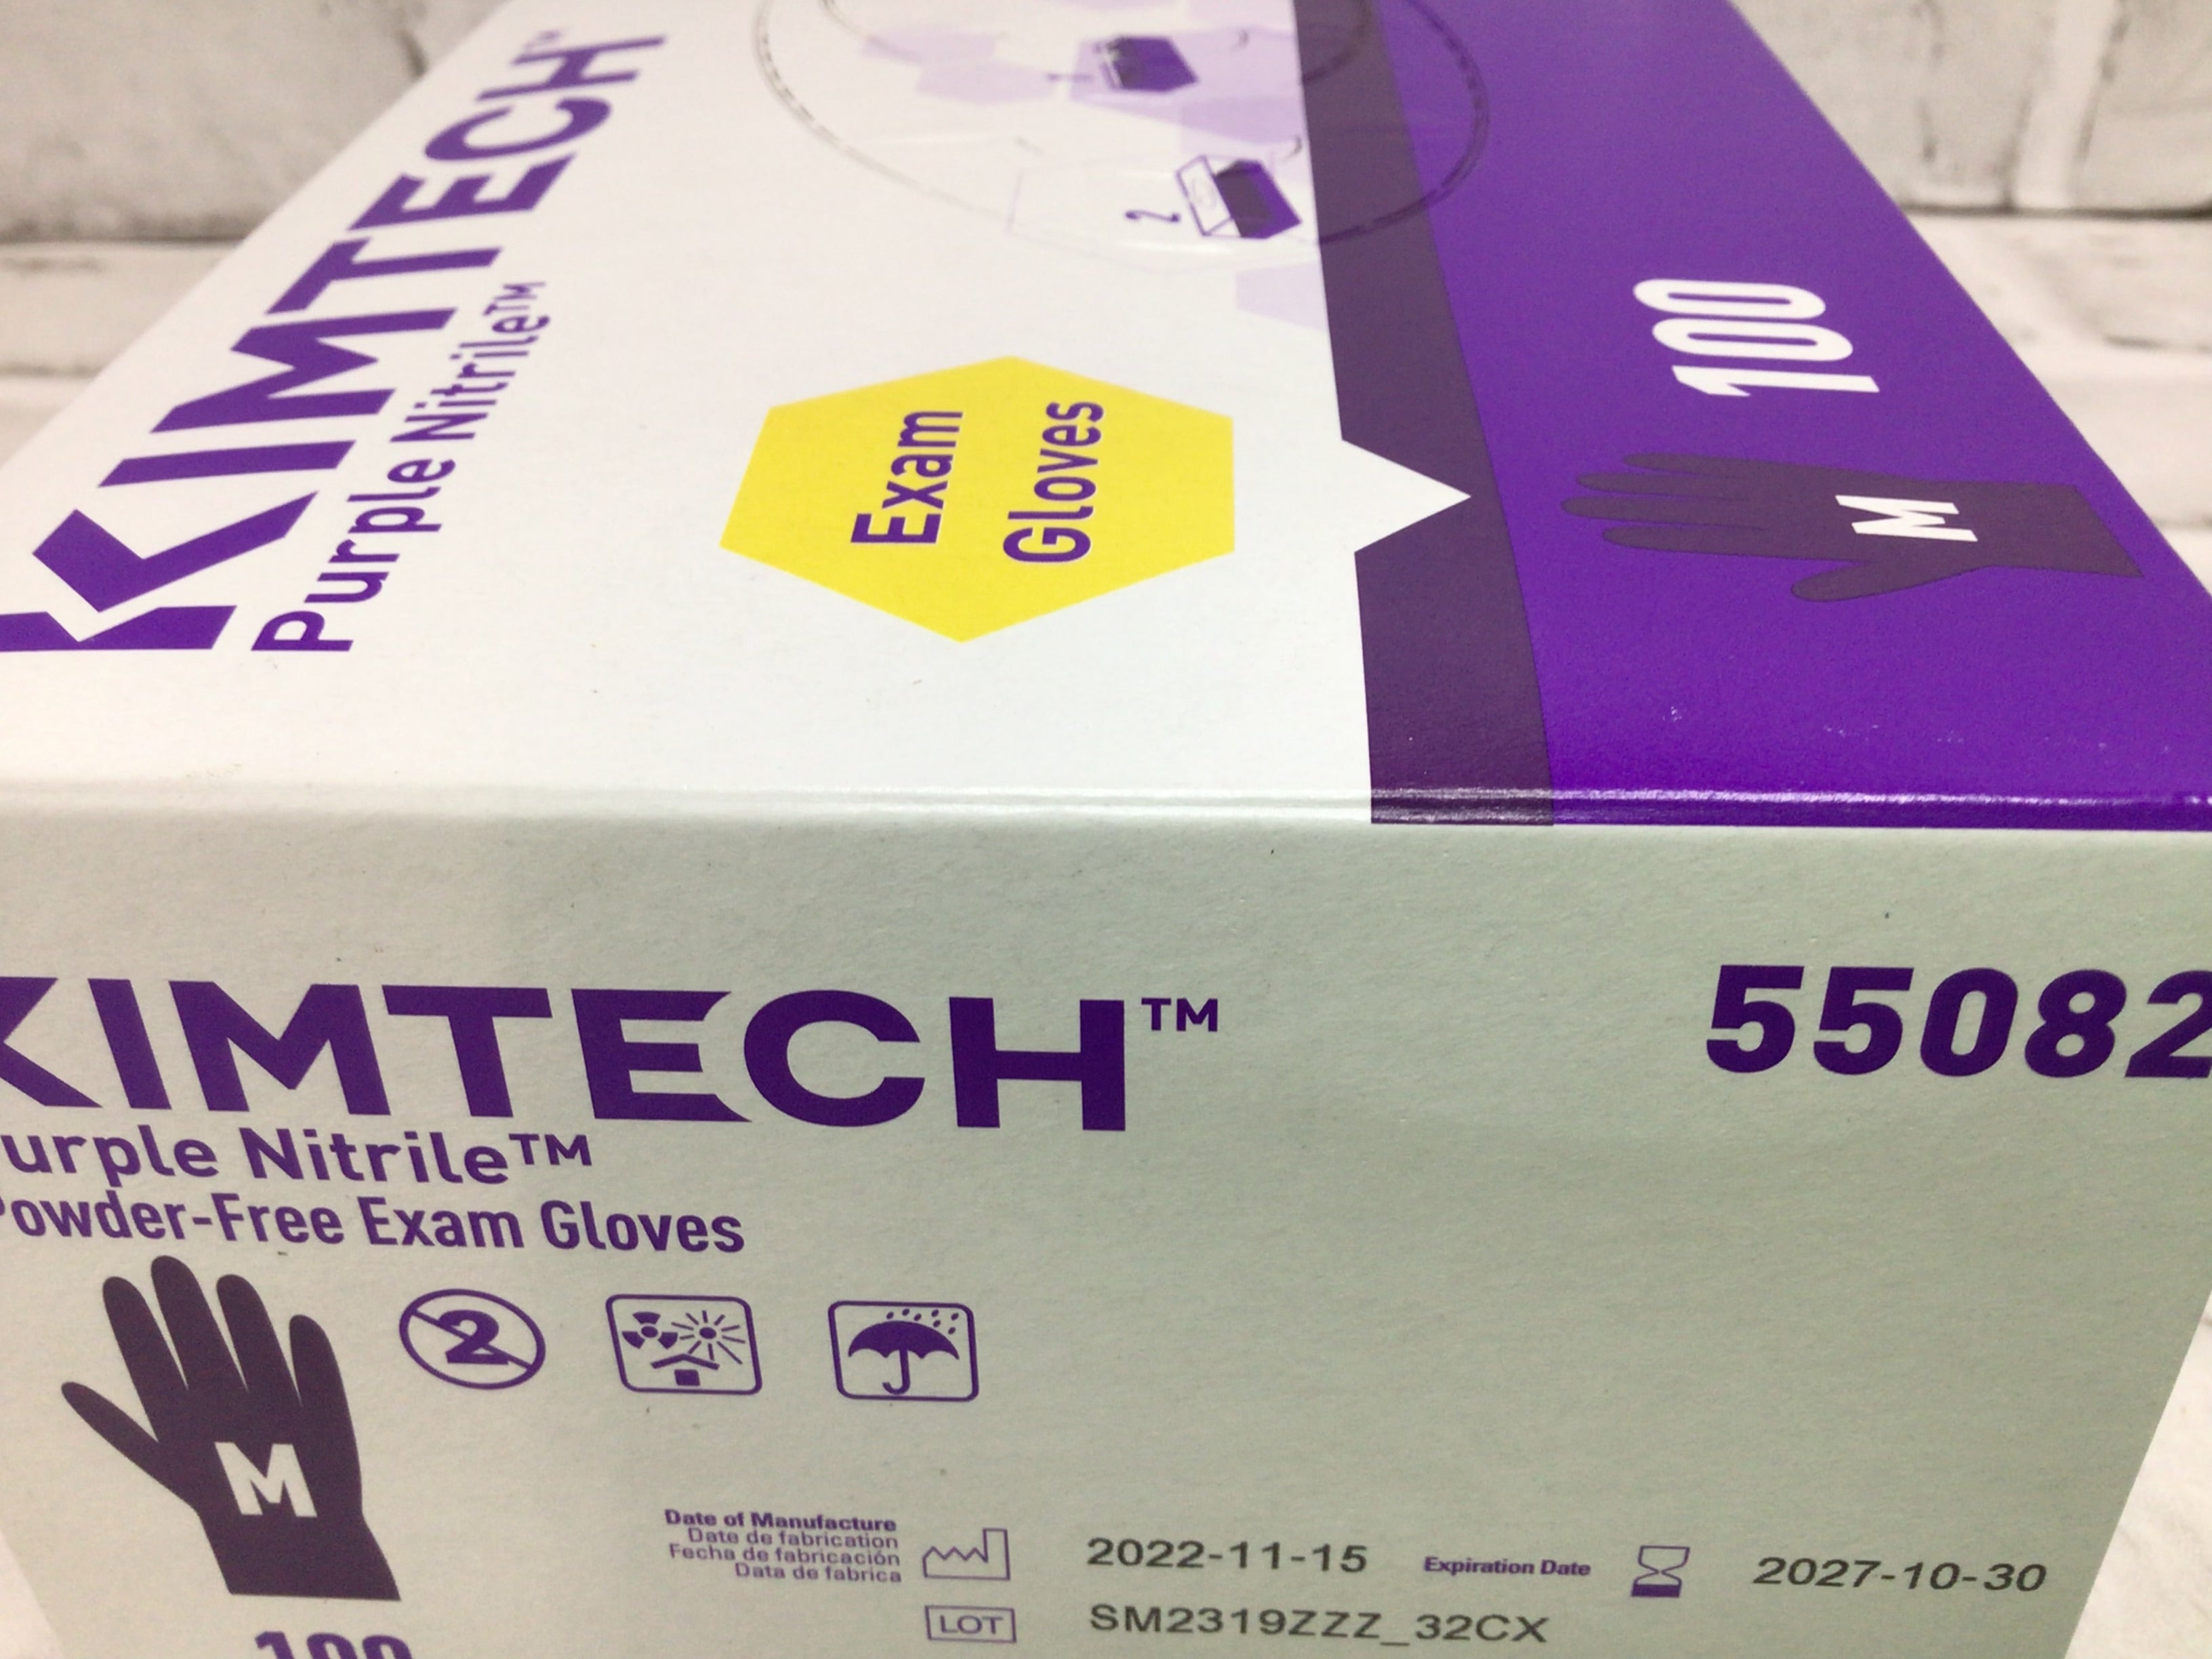 PURPLE NITRILE GLOVES KIMTECH 55082 Size Medium - 9 packs (900 gloves total)